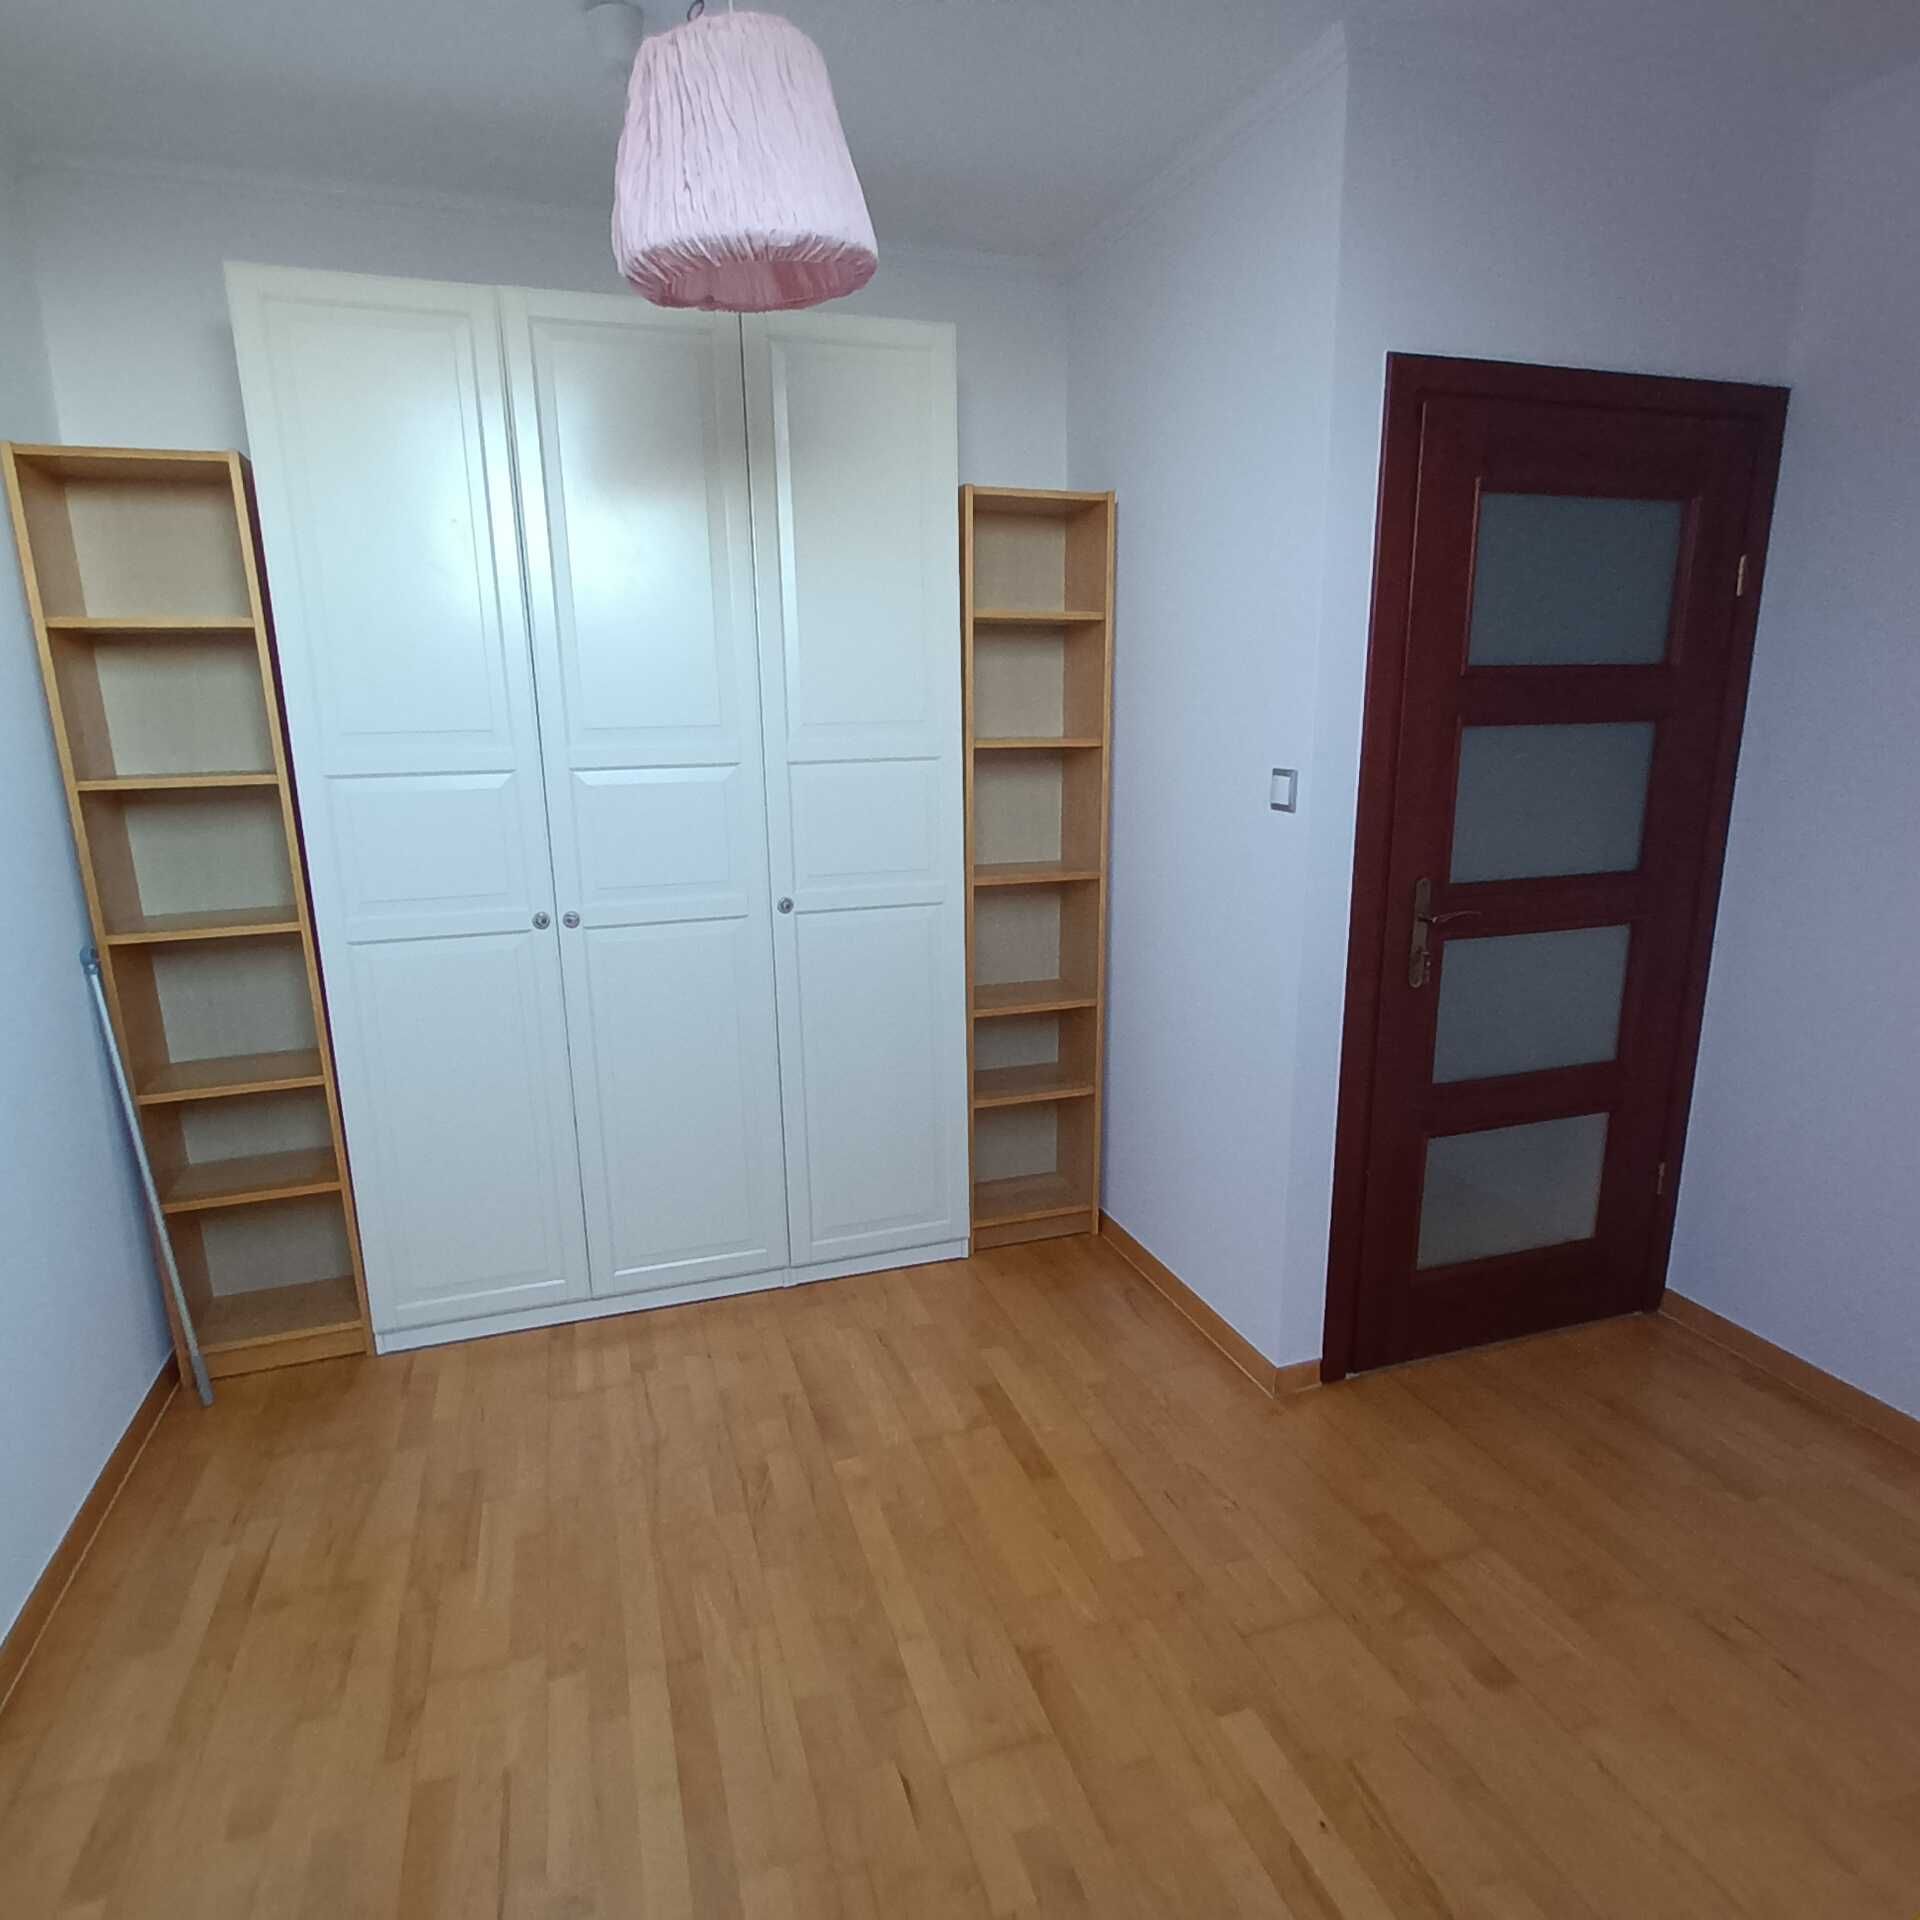 Dwupoziomowe mieszkanie , Wrocław osiedle Ołtaszyn, 86 m2 na 104 m2